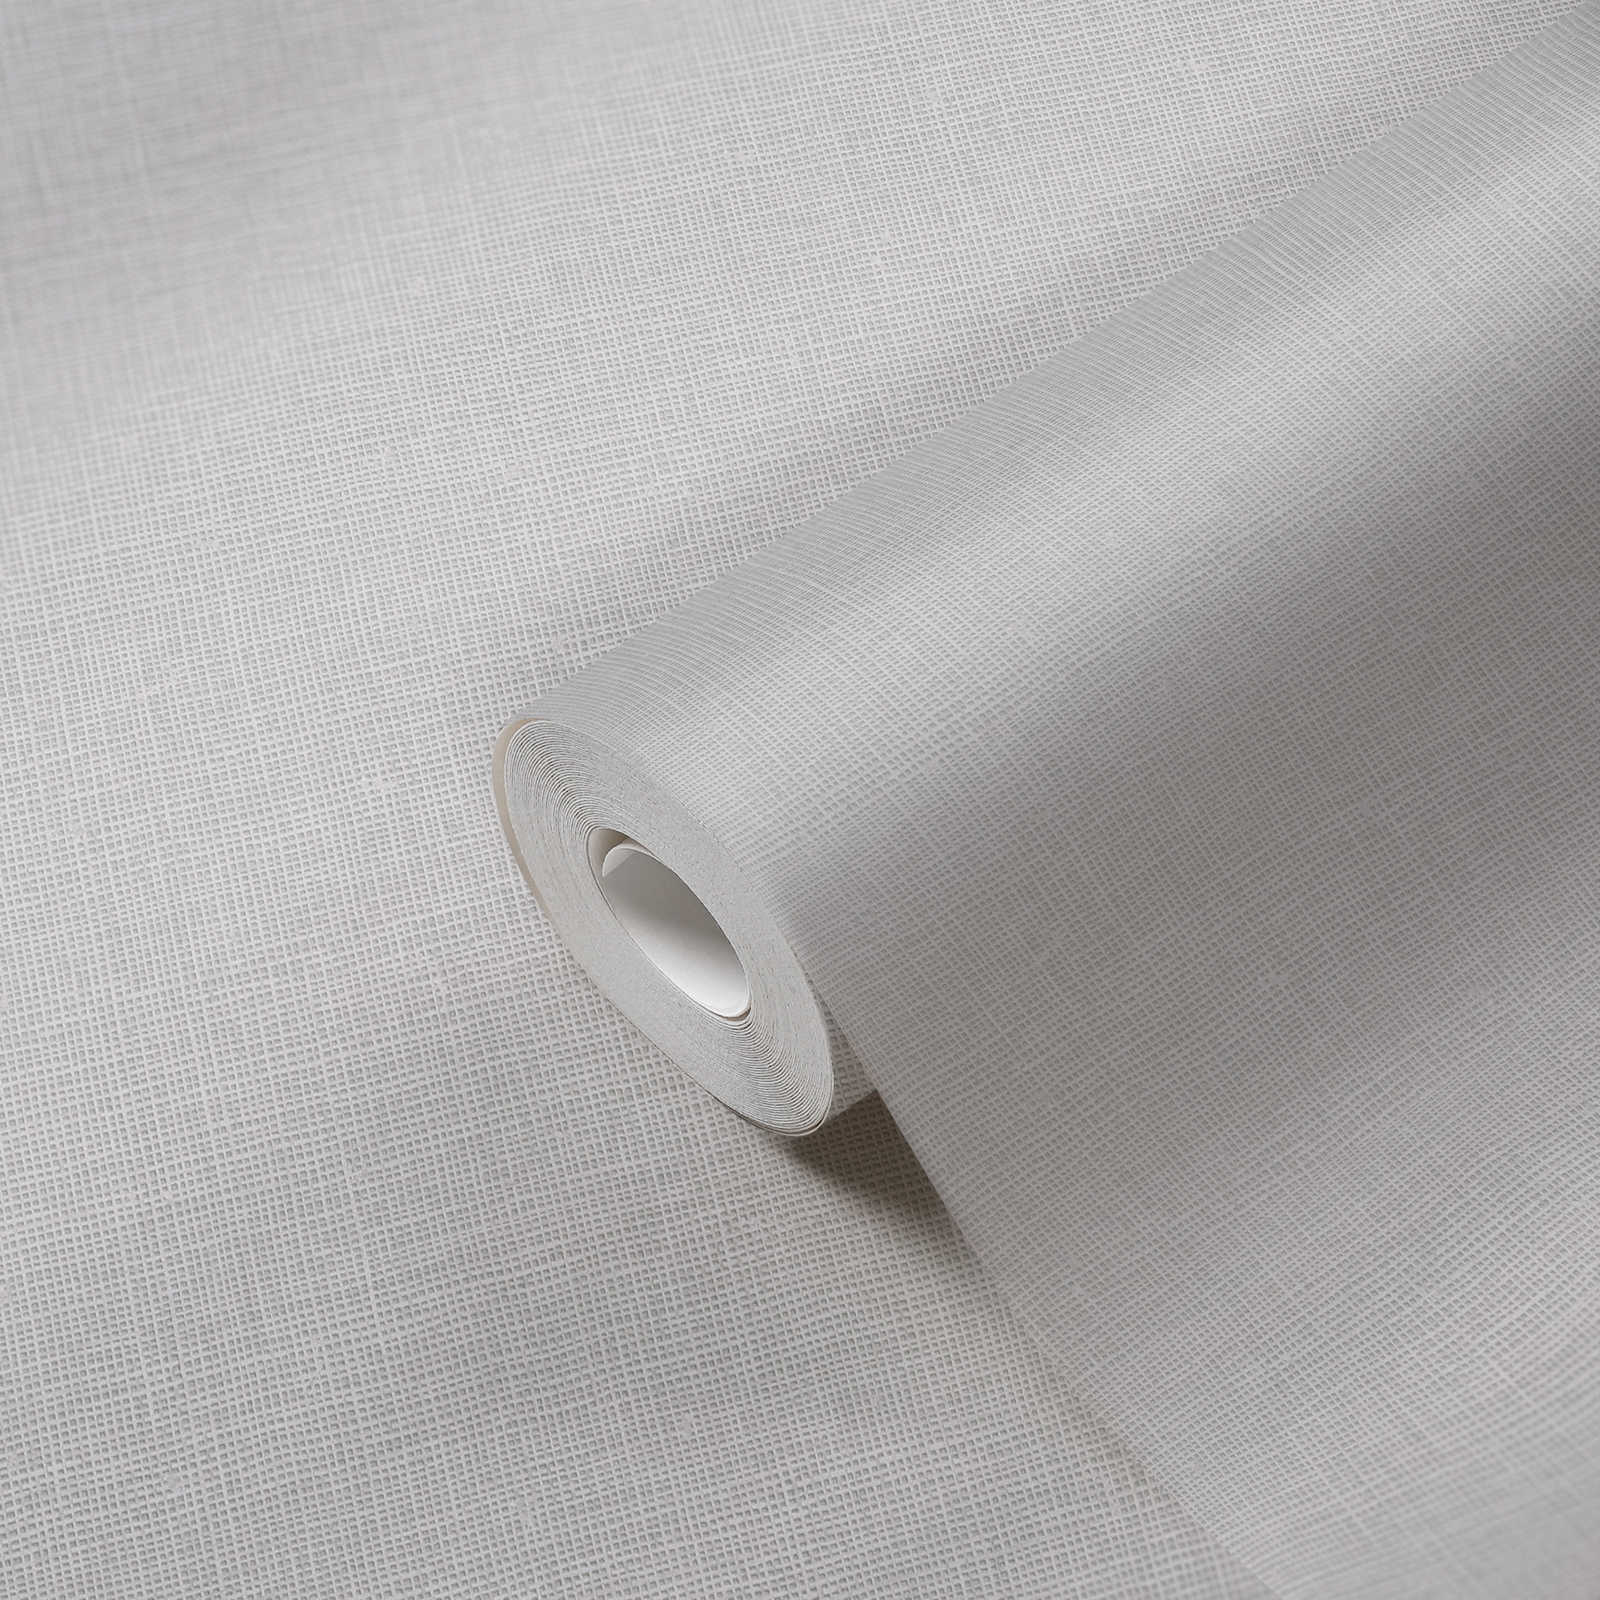             Non-woven wallpaper plain with linen texture - grey
        